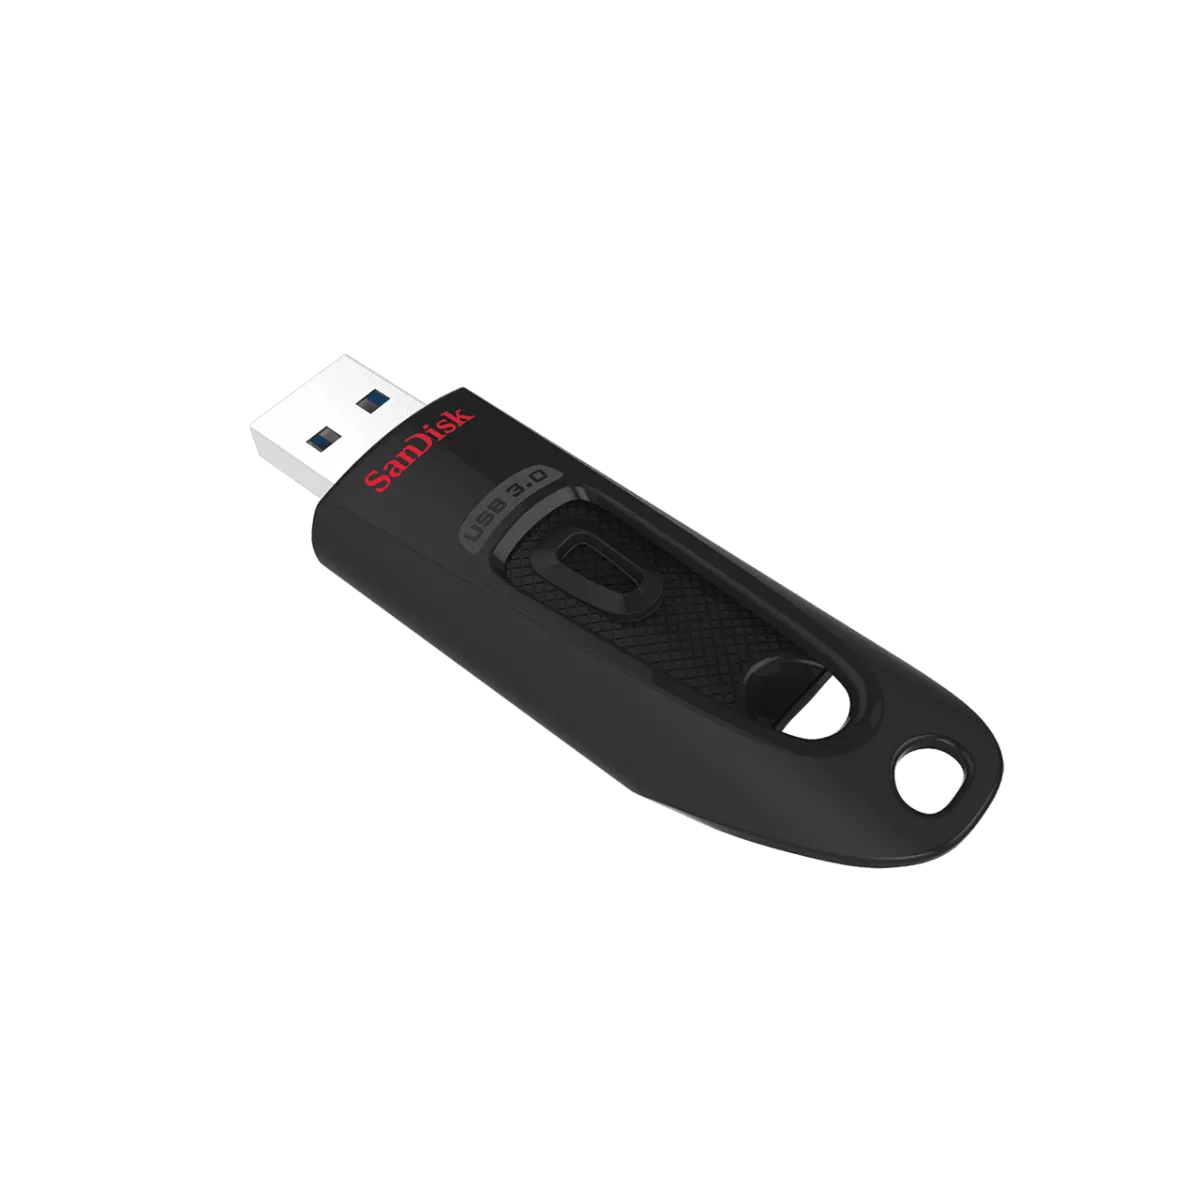 SanDisk CLE USB 128 Go ULTRA RAPIDE 3.0 - Prix pas cher